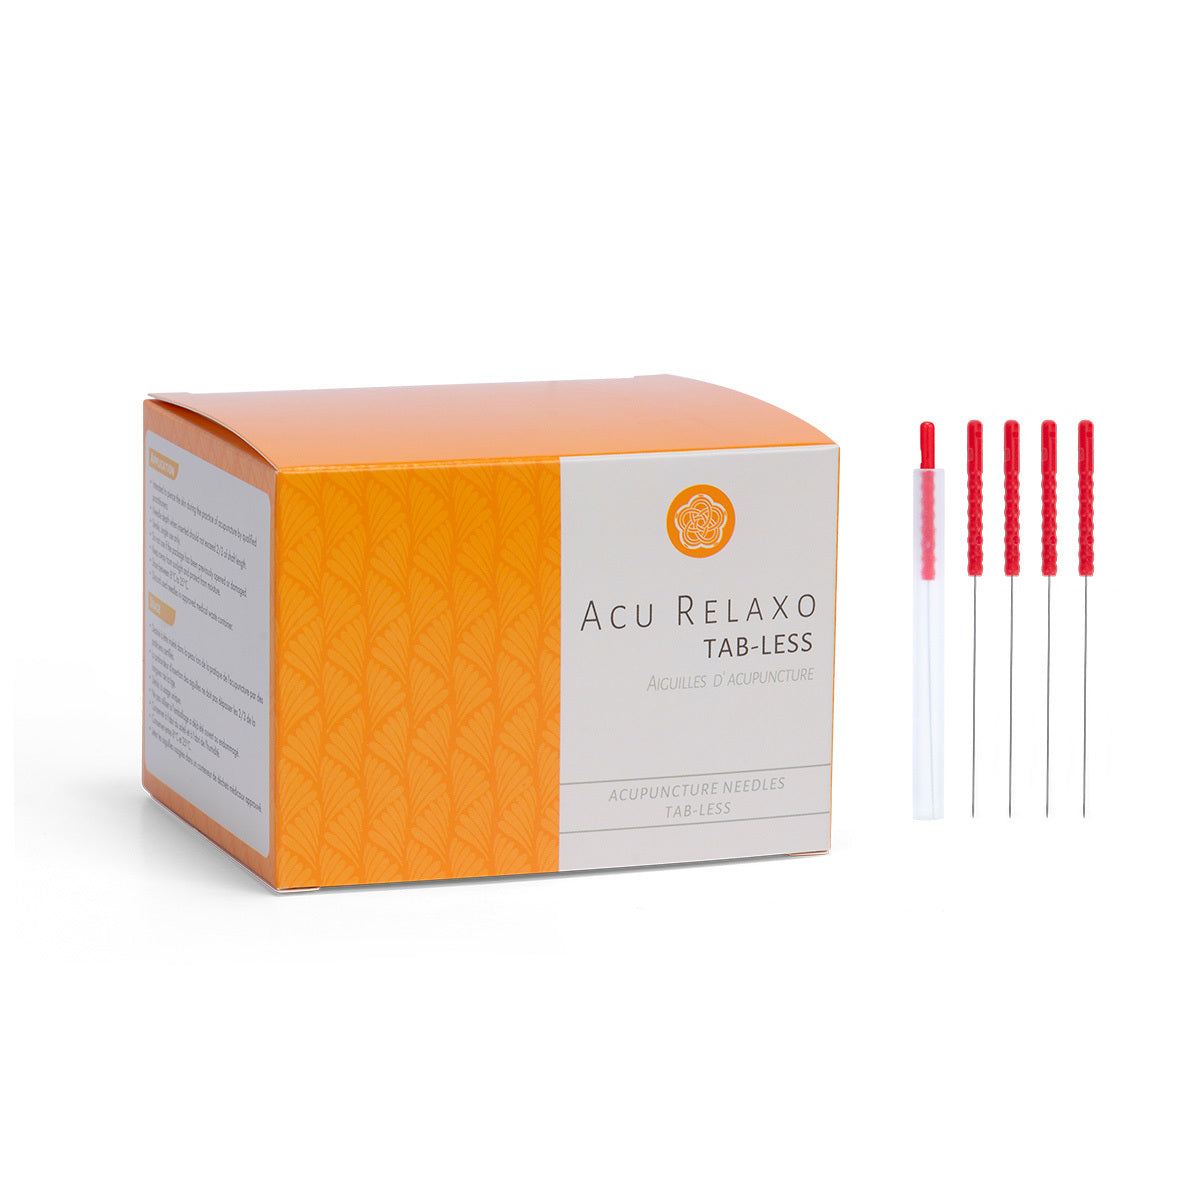 Aiguilles d'acupuncture Acu Relaxo Tab-less 500pcs/boîte